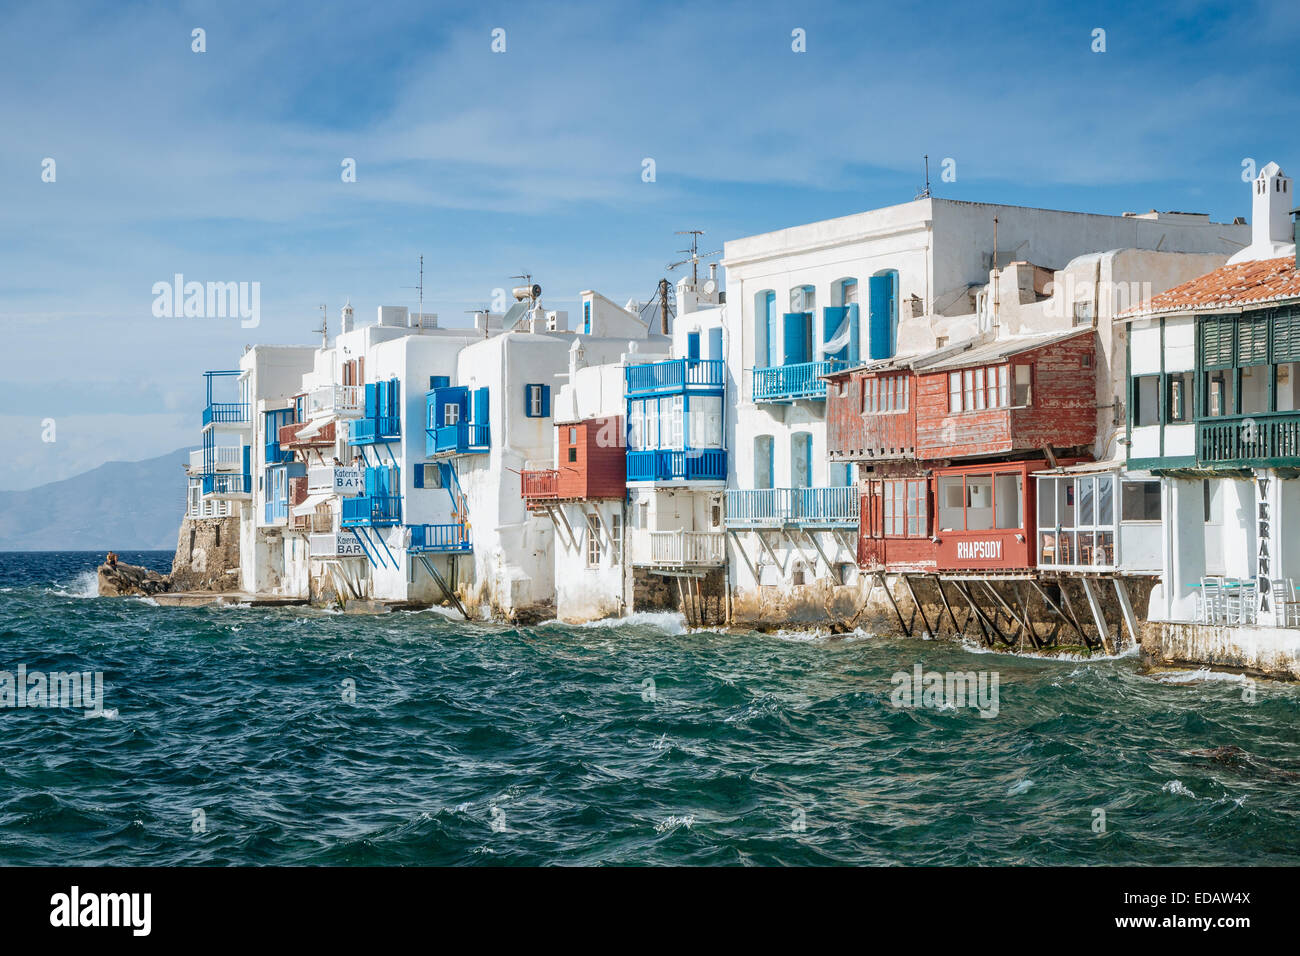 La petite Venise dans la ville de Mykonos, îles grecques. Banque D'Images